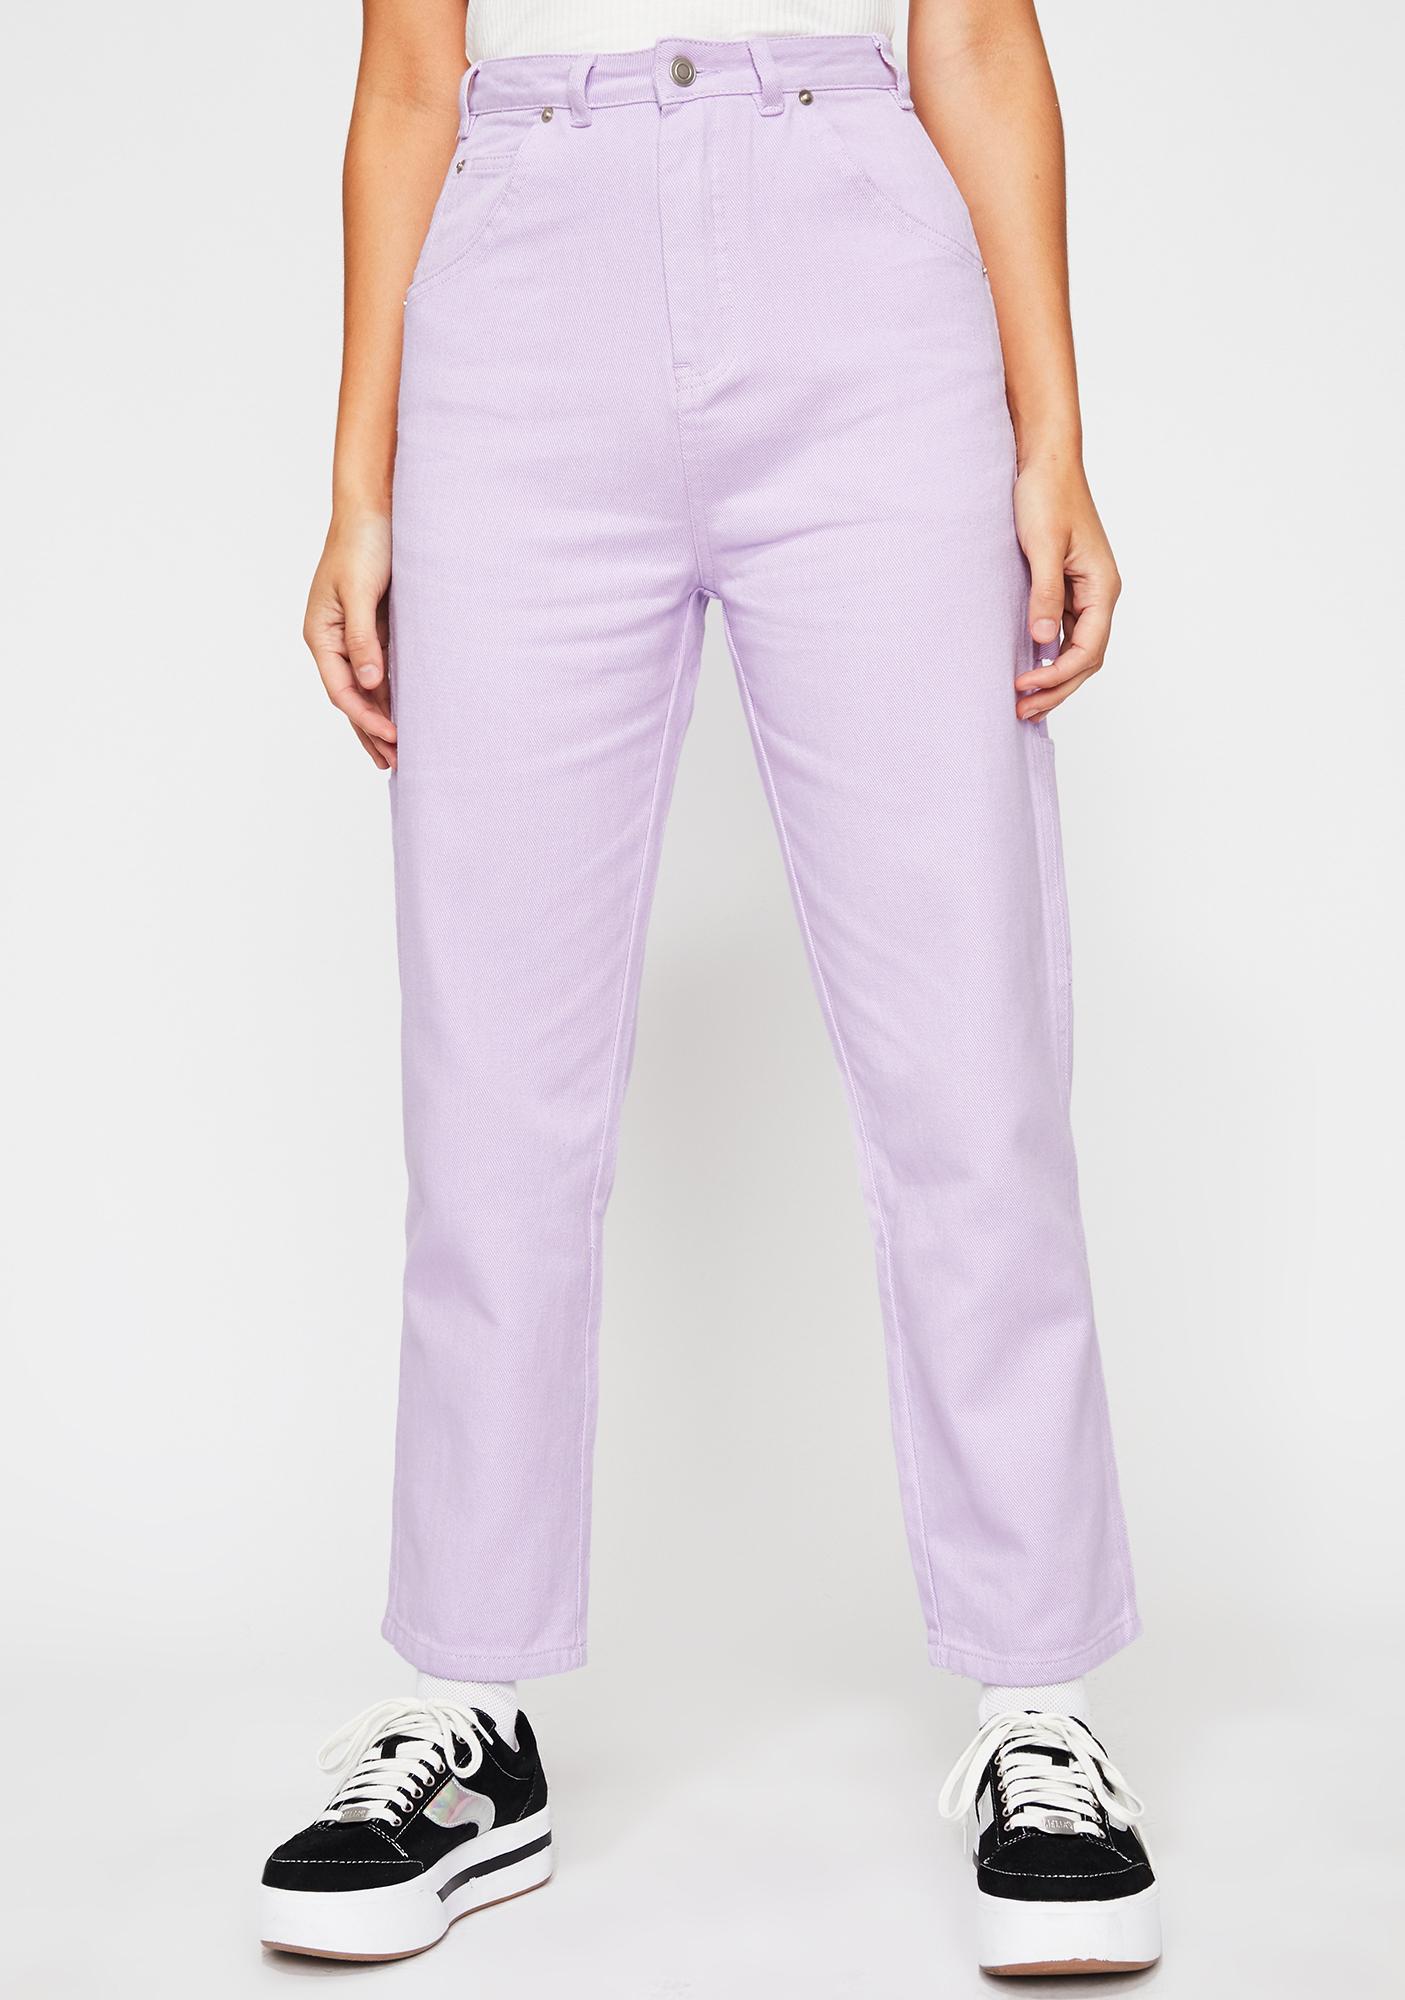 pink carpenter pants